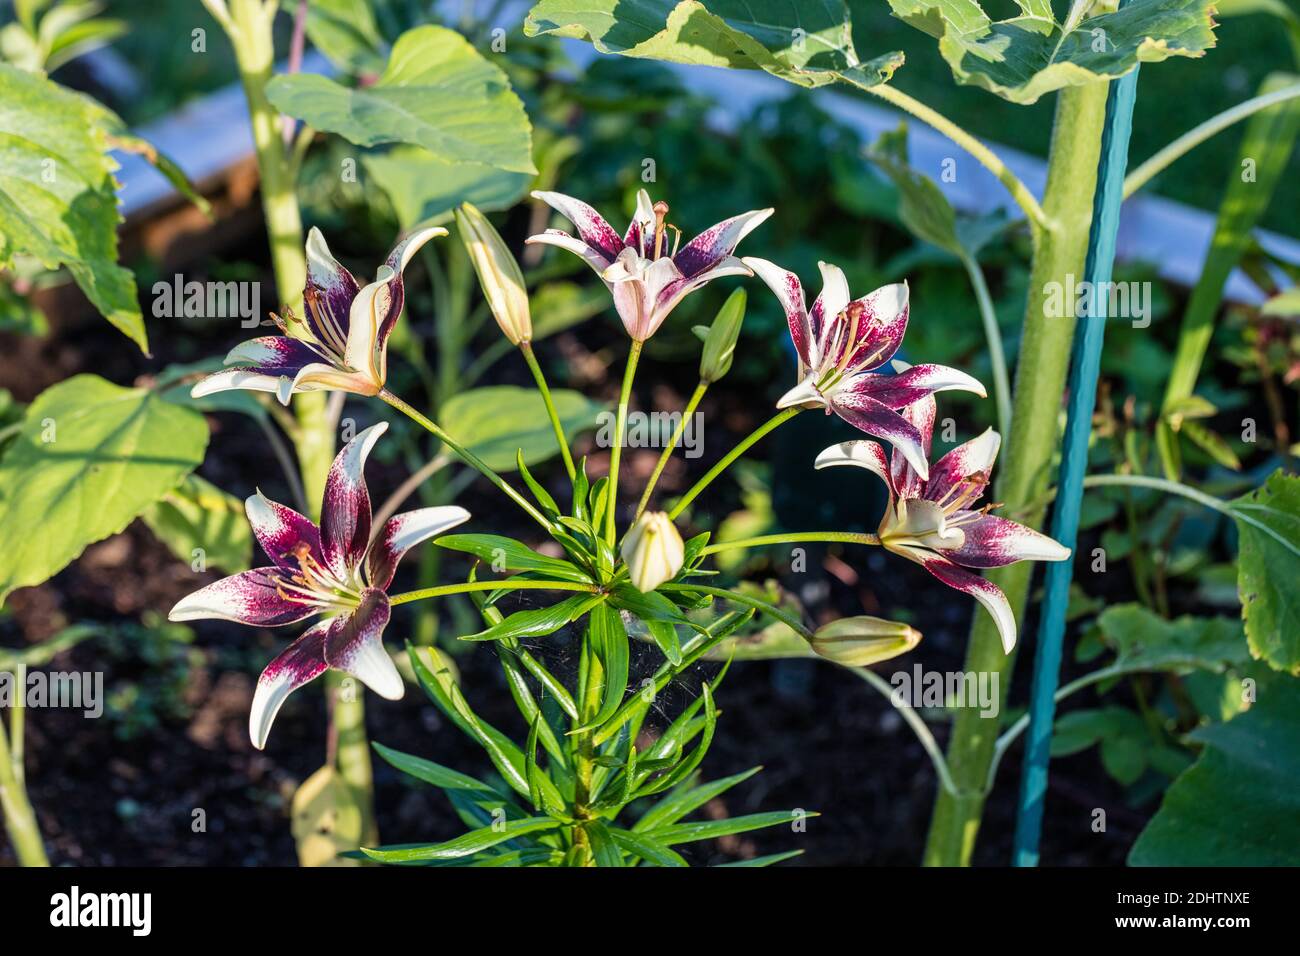 'Tango Cappuccino' Asiatic Lily, Asiatisk lilja (Lilium hollandicum) Stock Photo